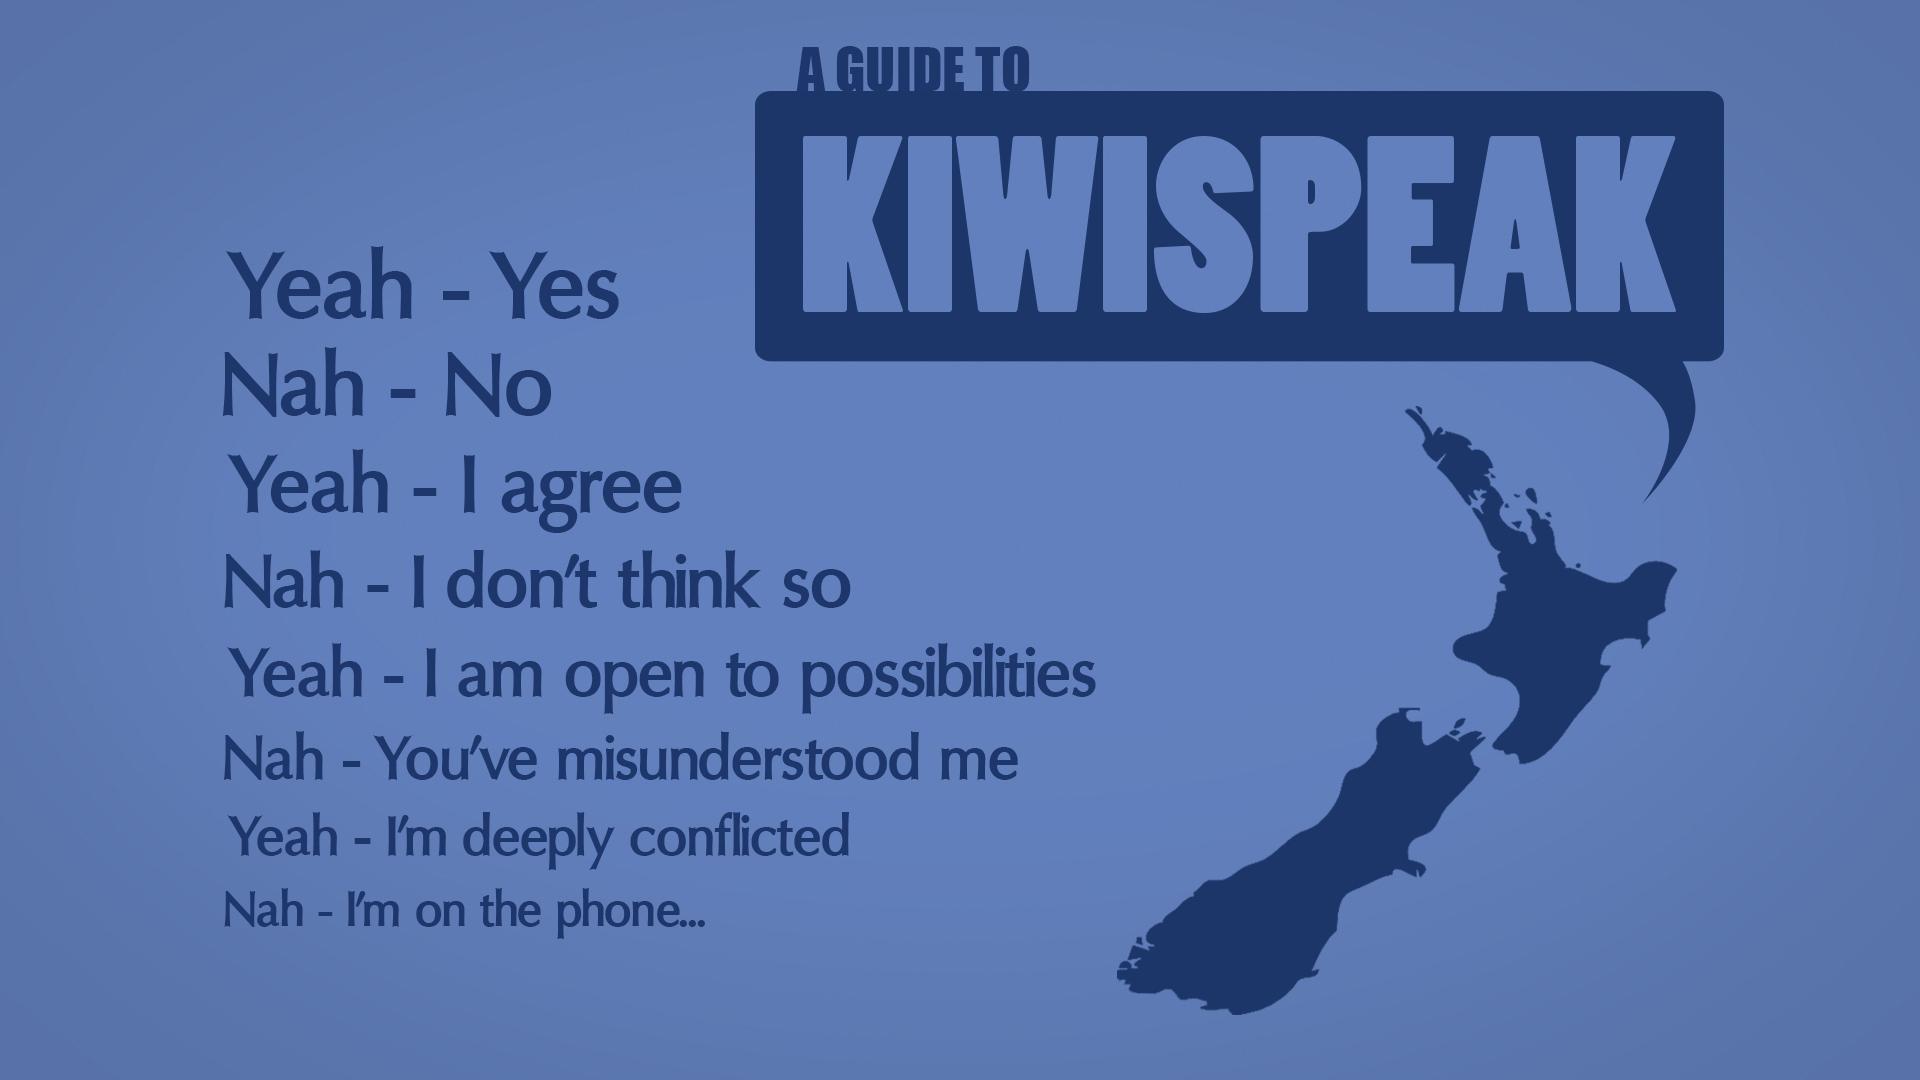 دليل من kiwispeak نيوزيلندا مضحك ملصق ديكور المنزل الجدار ملصق 4 أحجام الشحن مجانا(China